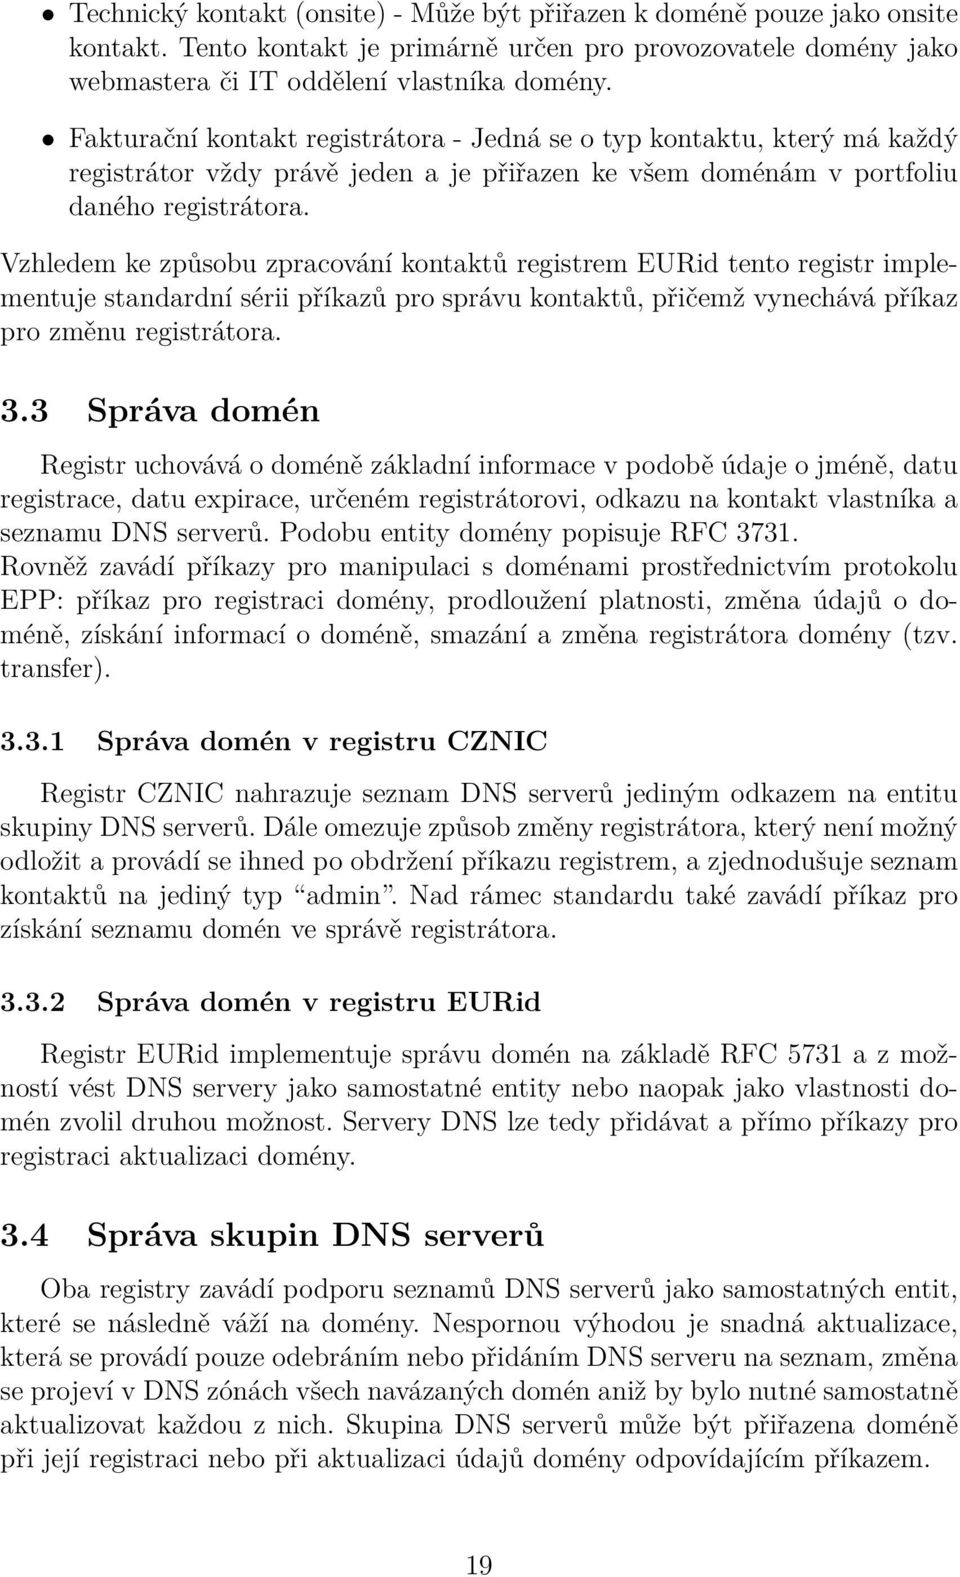 Vzhledem ke způsobu zpracování kontaktů registrem EURid tento registr implementuje standardní sérii příkazů pro správu kontaktů, přičemž vynechává příkaz pro změnu registrátora. 3.